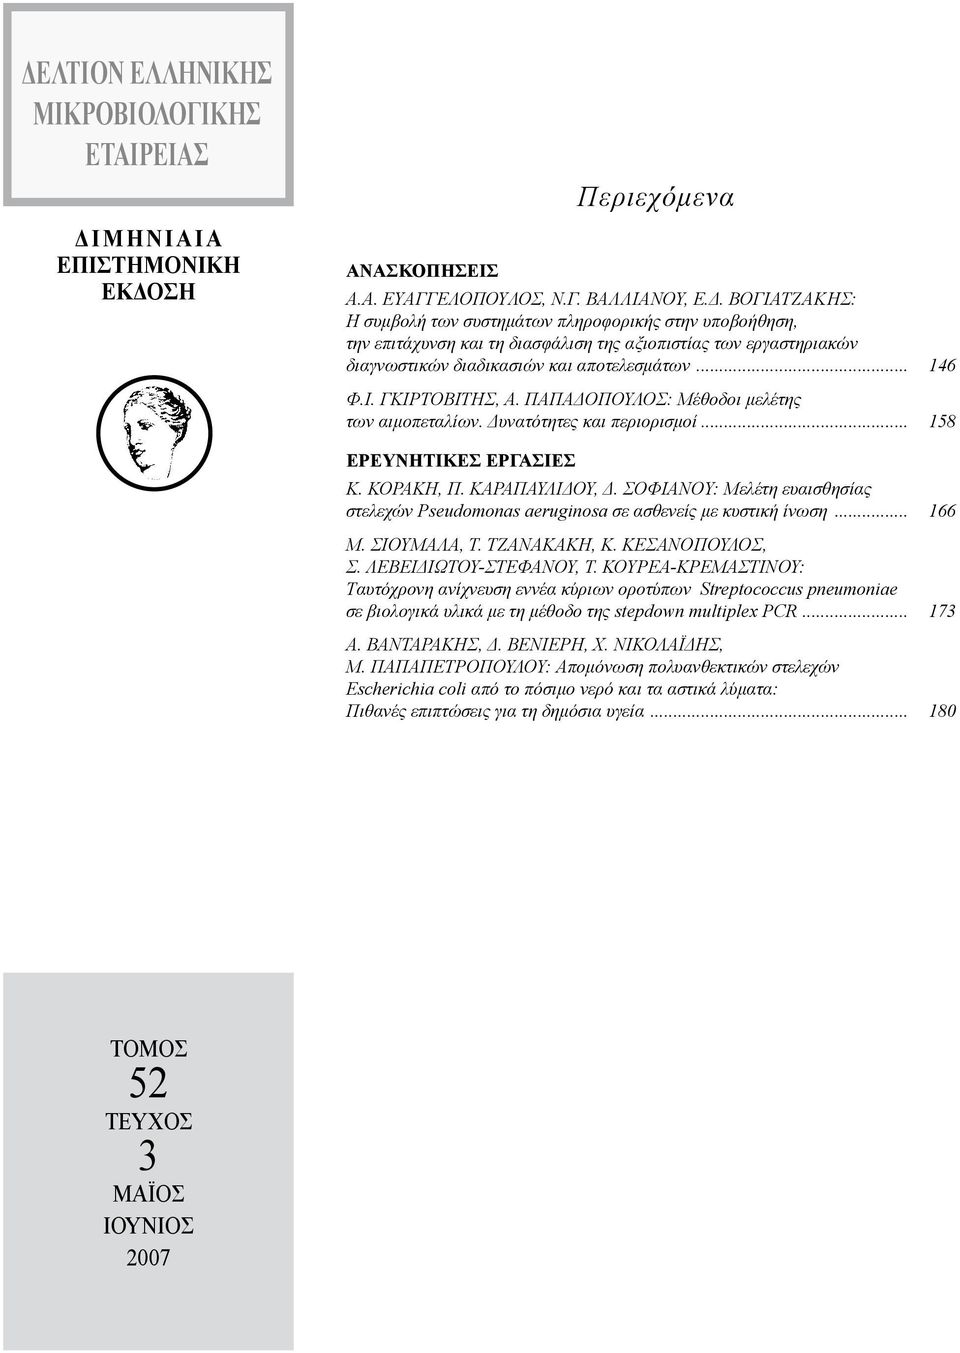 ΣοφιανοY: Μελέτη ευαισθησίας στελεχών Pseudomonas aeruginosa σε ασθενείς με κυστική ίνωση... 166 M. Σιουμαλα, Τ. Τζανακακη, Κ. Κεσανοπουλος, Σ. Λεβειδιωτου-Στεφανου, Τ.